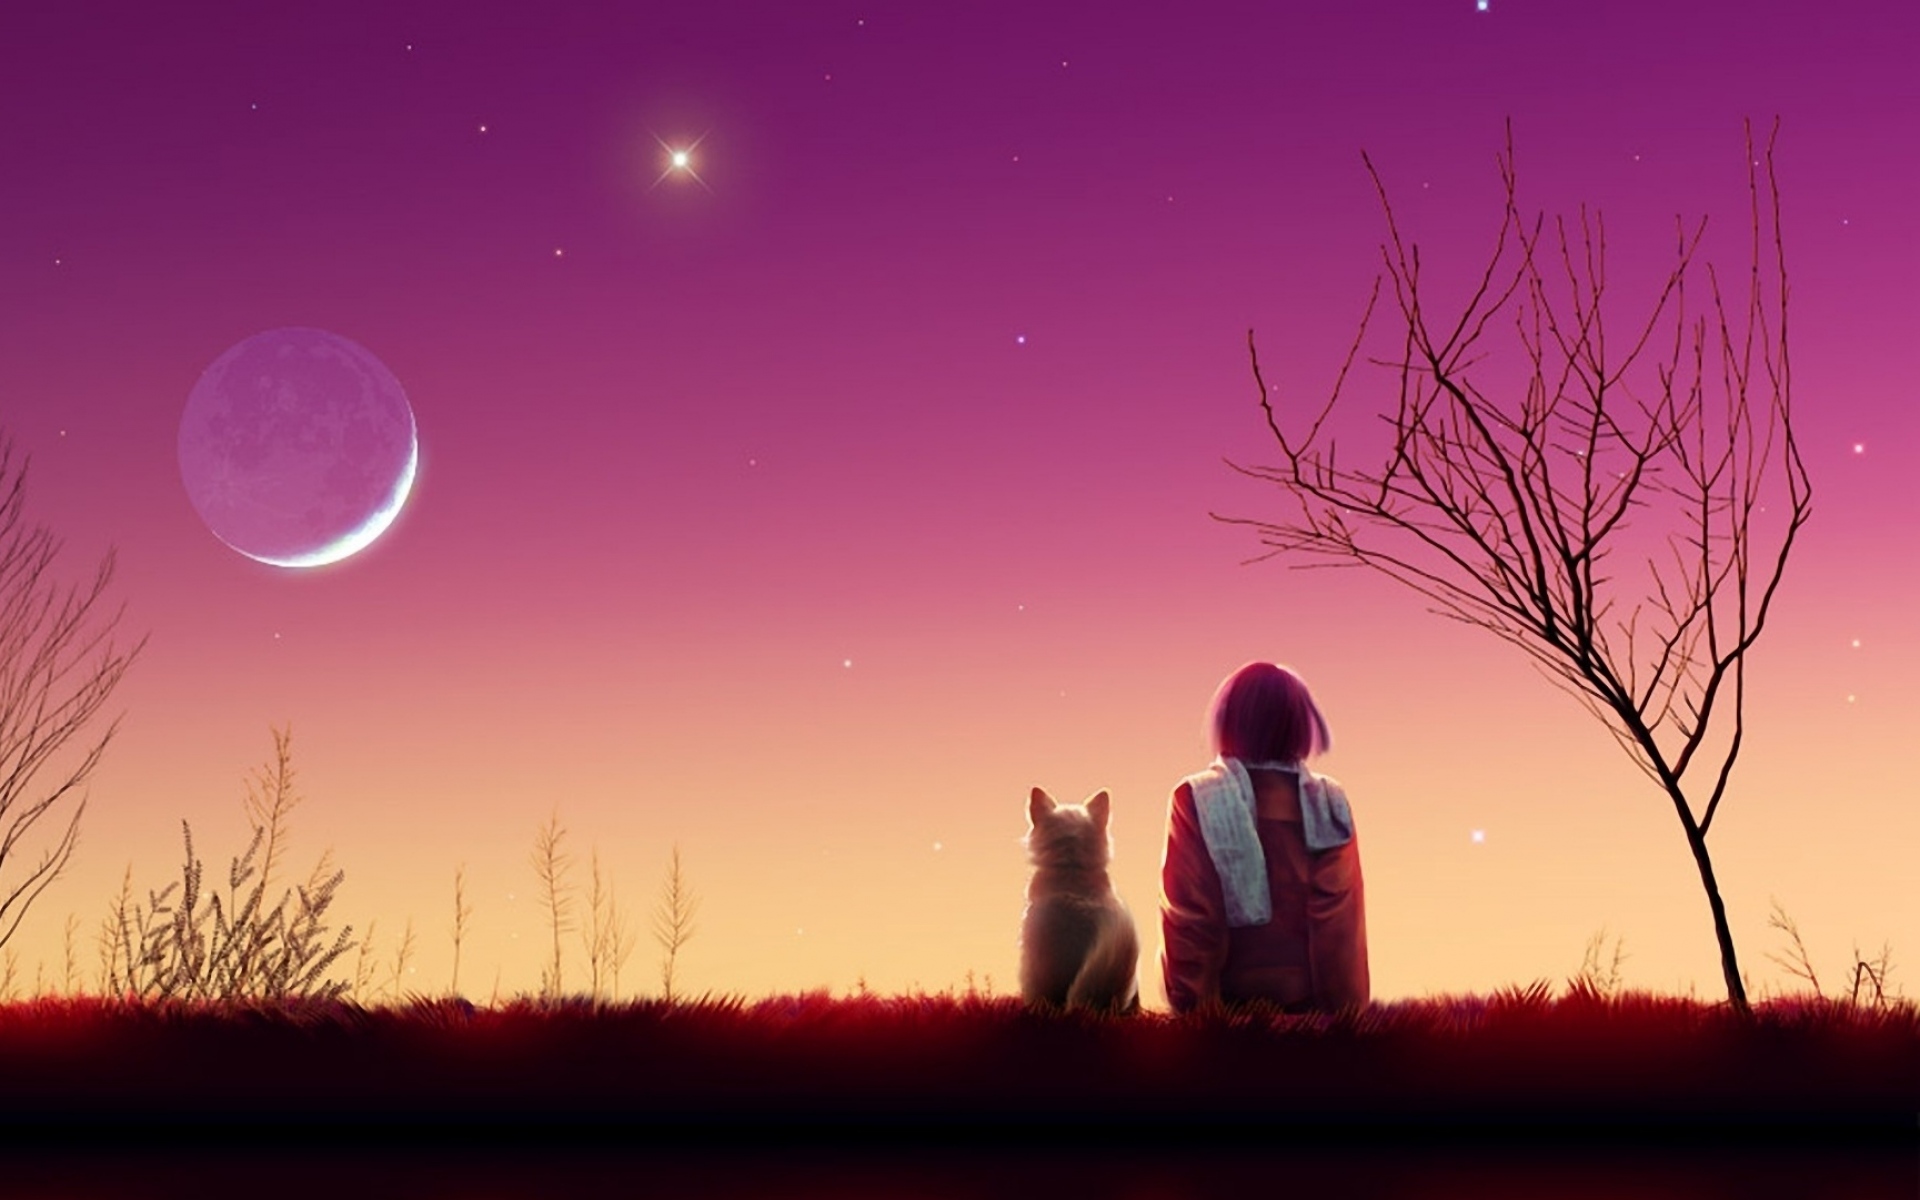 Картинки Kagaya moon, аниме, девушка, кошка, закат, природа фото и обои на рабочий стол